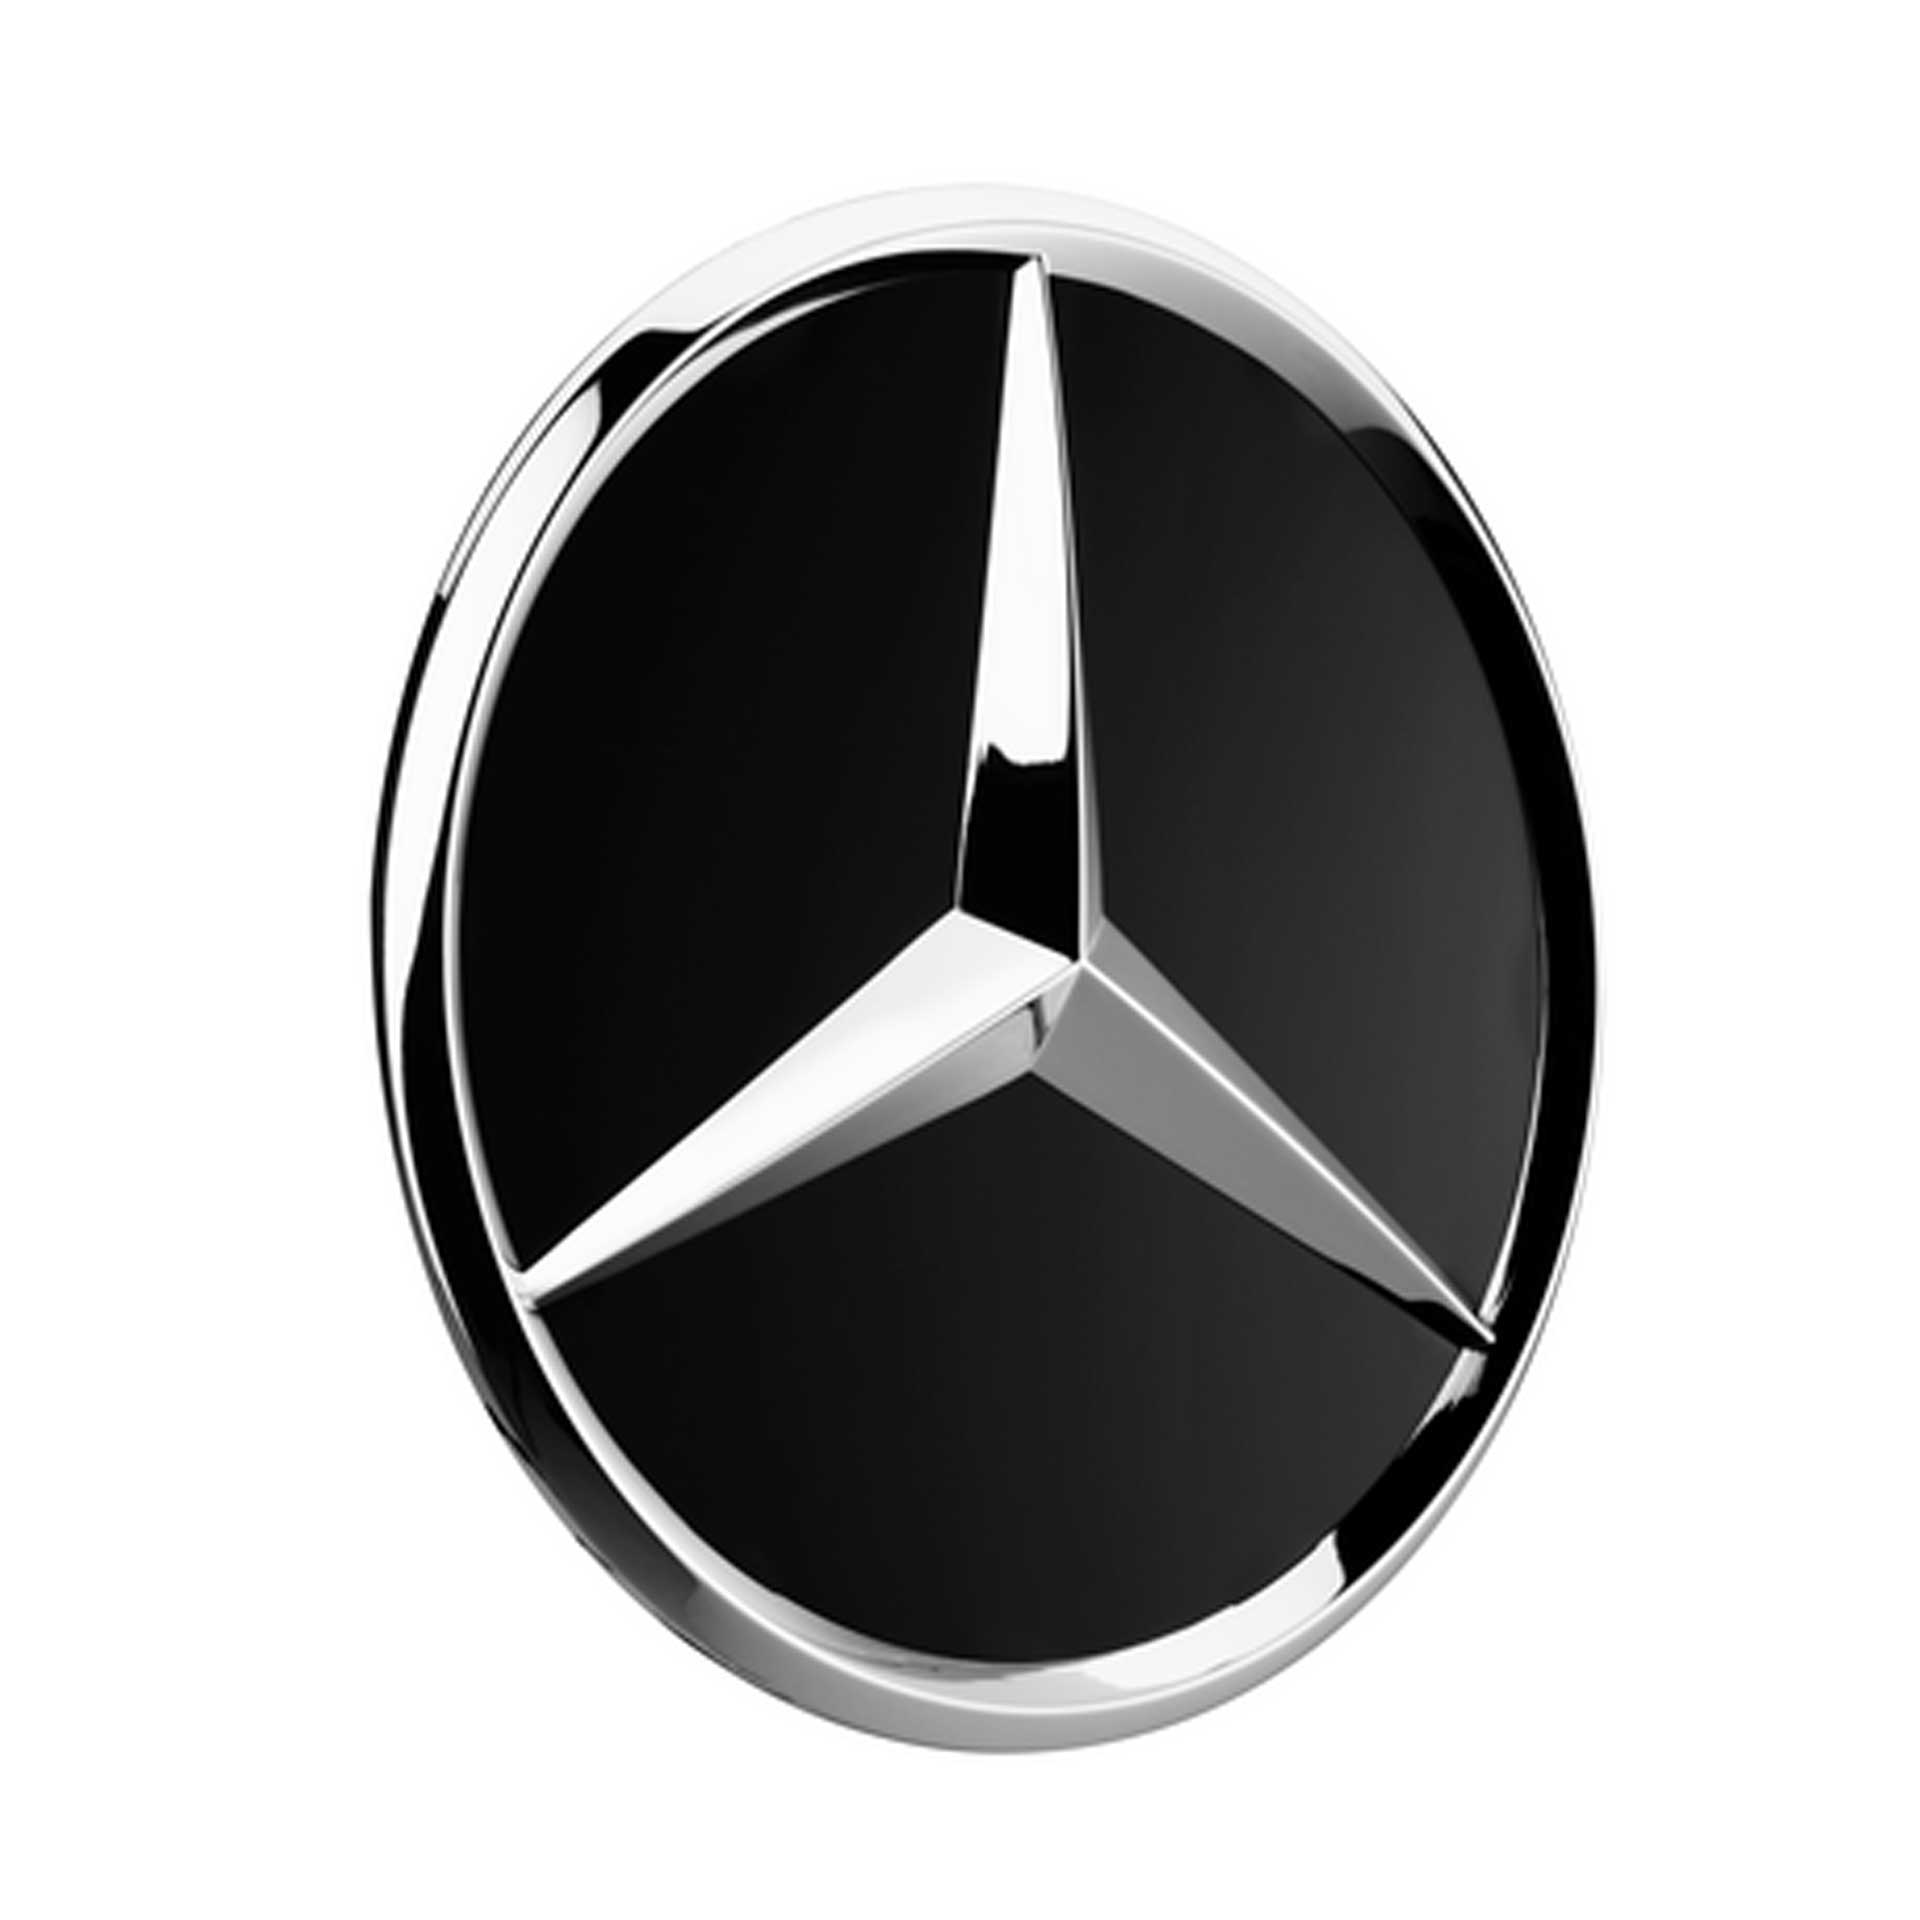 Mercedes-Benz Radnabenabdeckung Stern schwarz matt A22040001259283